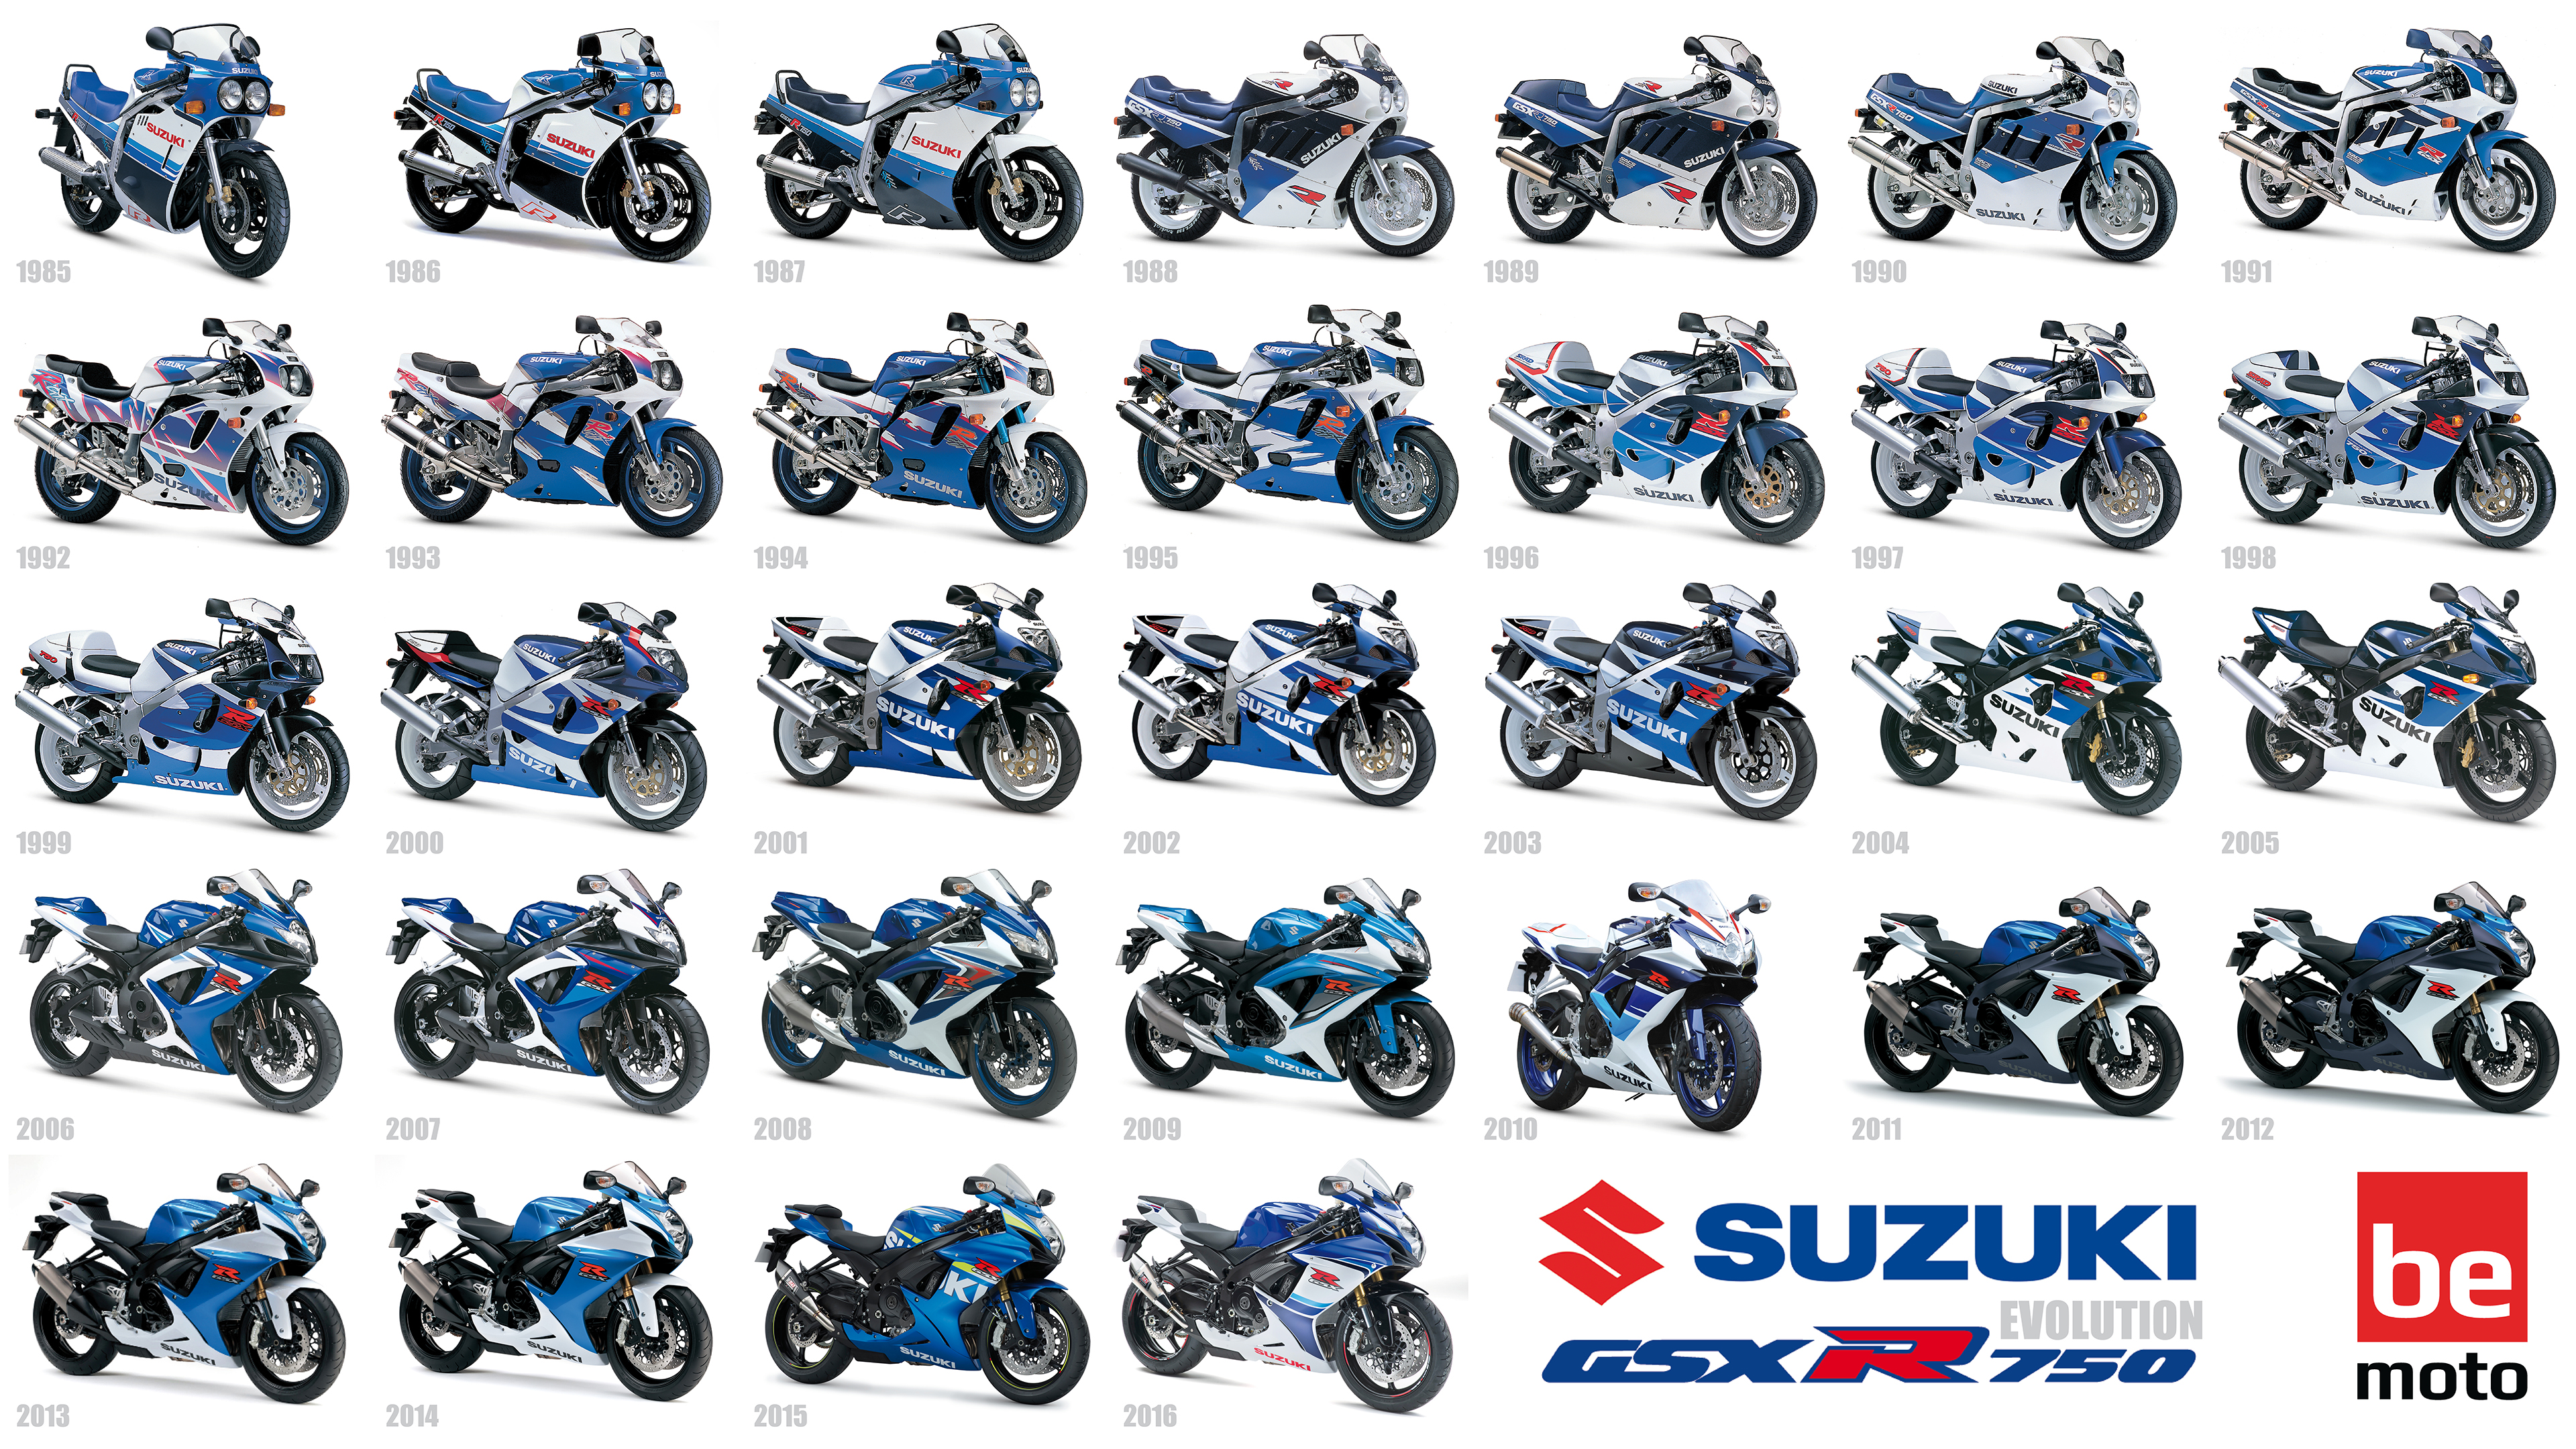 Suzuki Gsx-R750 Wallpapers